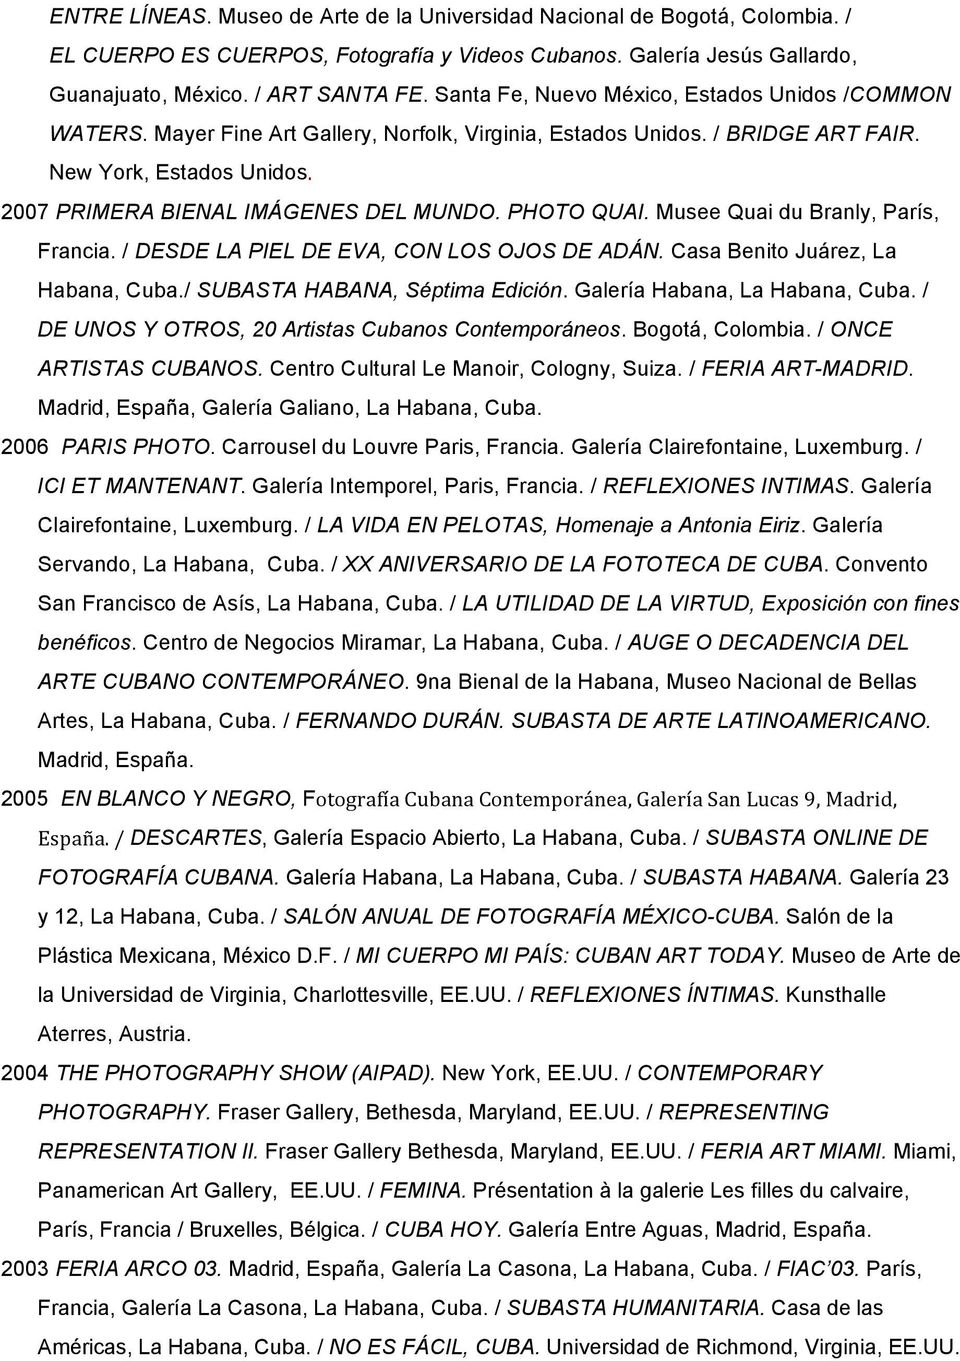 PHOTO QUAI. Musee Quai du Branly, París, Francia. / DESDE LA PIEL DE EVA, CON LOS OJOS DE ADÁN. Casa Benito Juárez, La Habana, Cuba./ SUBASTA HABANA, Séptima Edición. Galería Habana, La Habana, Cuba.